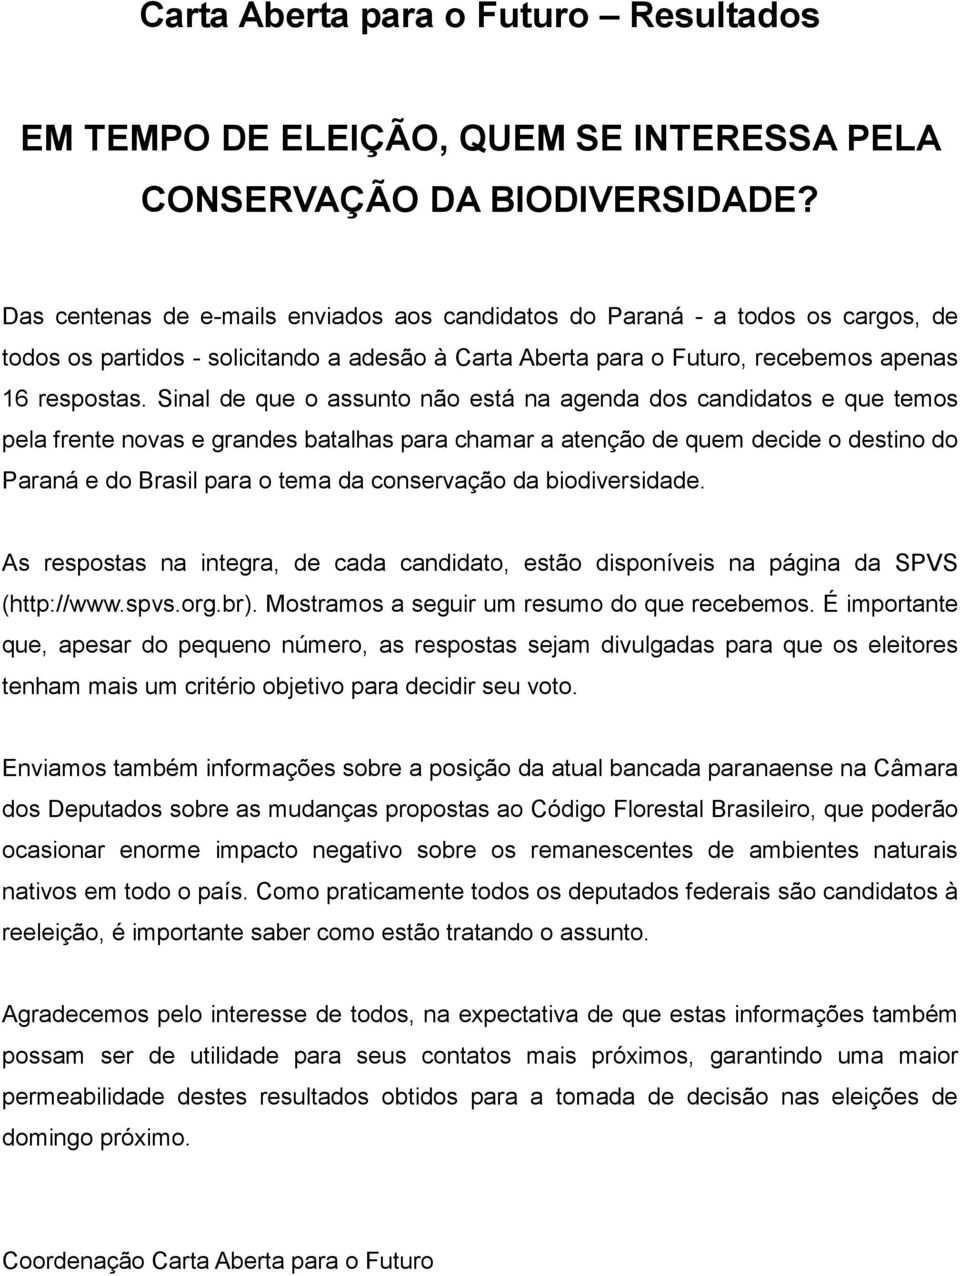 Sinal de que o assunto não está na agenda dos candidatos e que temos pela frente novas e grandes batalhas para chamar a atenção de quem decide o destino do Paraná e do Brasil para o tema da